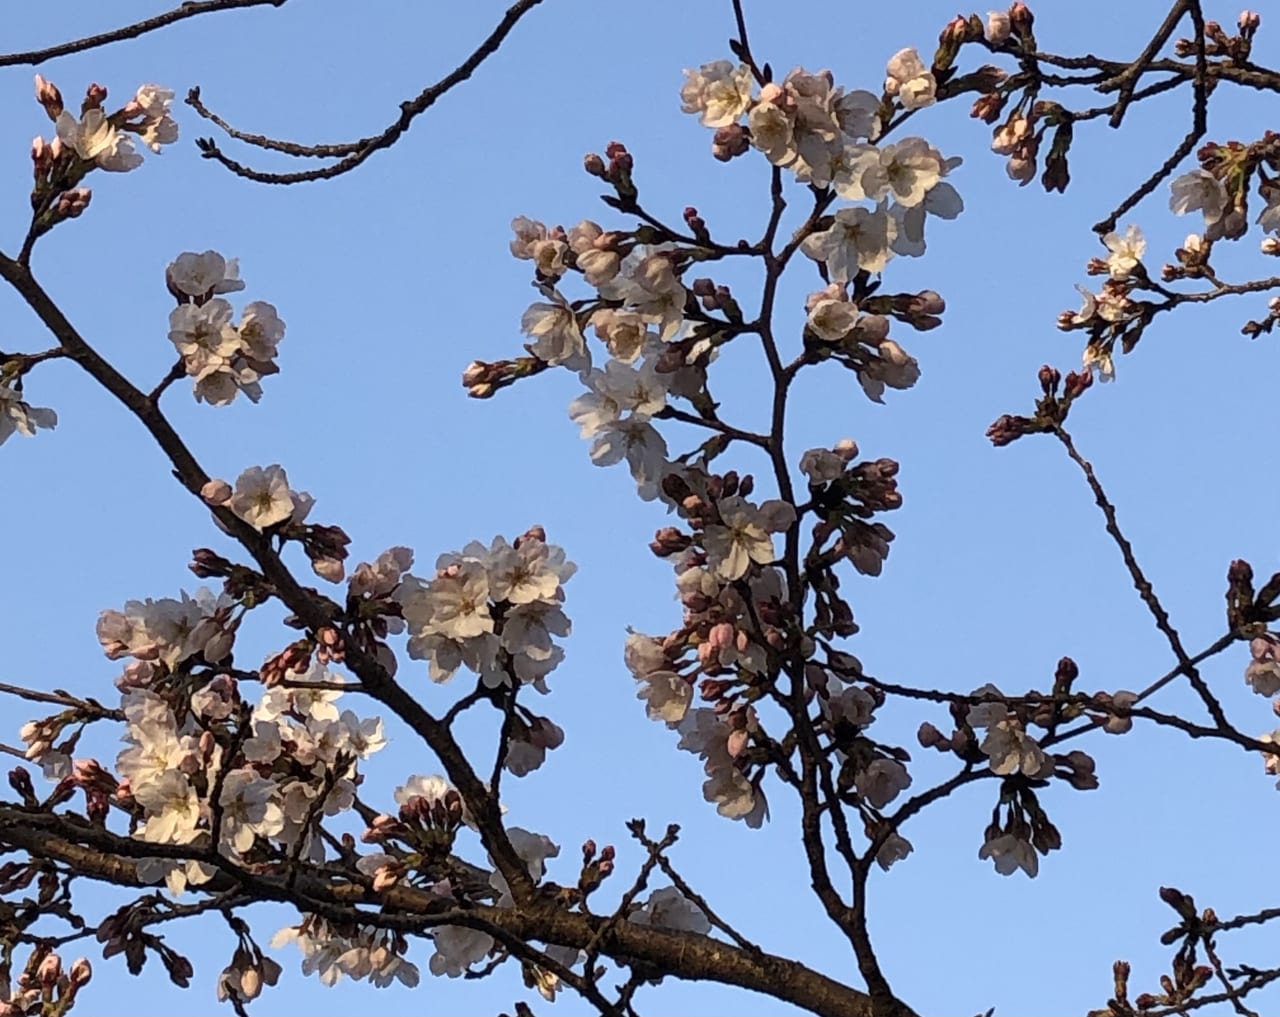 桶川市 暖かくなってきました 城山公園の桜の様子を見てきました 桜の開花は 号外net 上尾市 桶川市